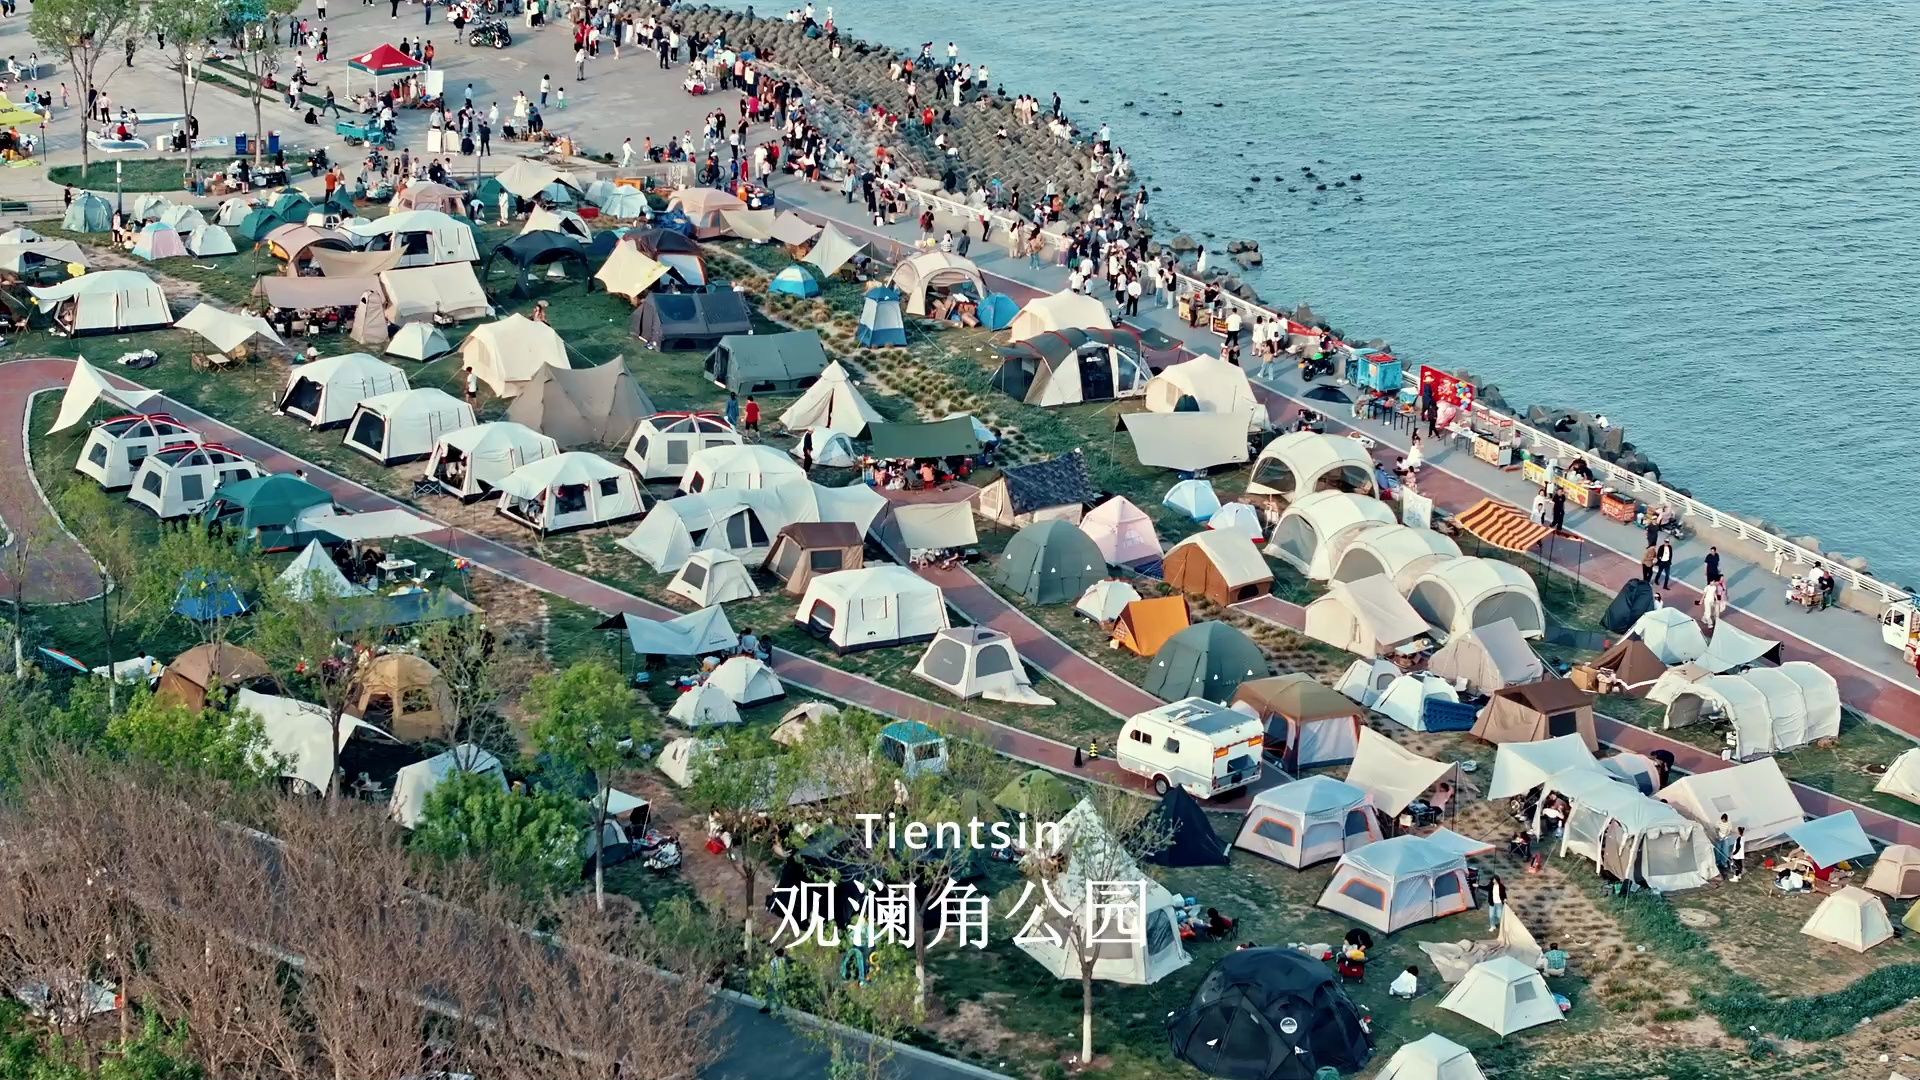 天津“五一”观澜角公园露营节。 不只是人山人海，还有帐篷海。带上设备，现场拍、现场剪。#海边的风 #五一 #露营 #去看海 #旅行vlog